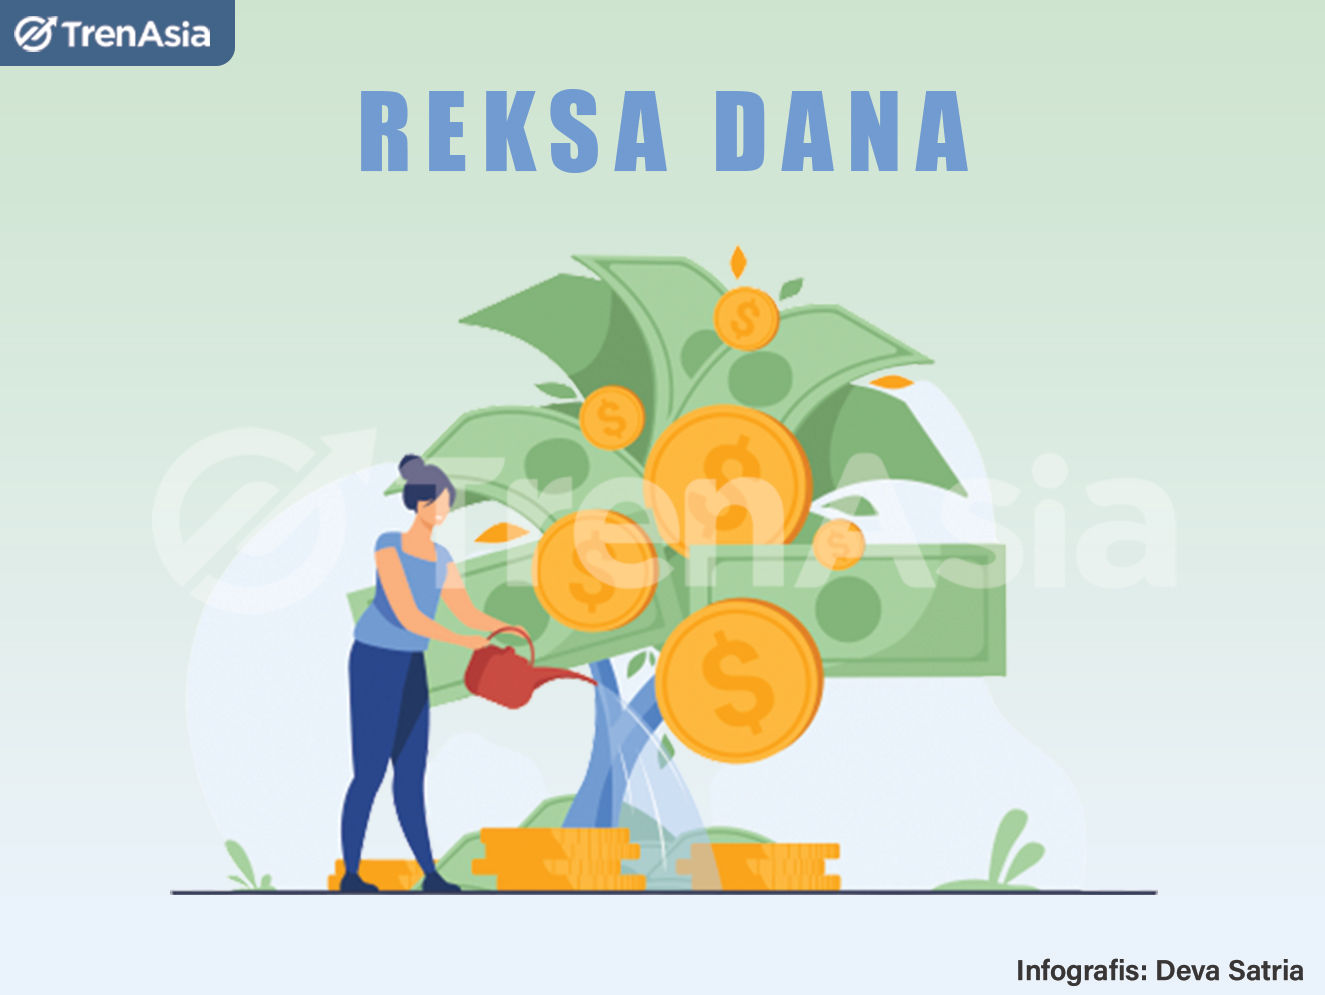 ilustrasi investasi reksa dana. ilustrator: Deva Satria/TrenAsia